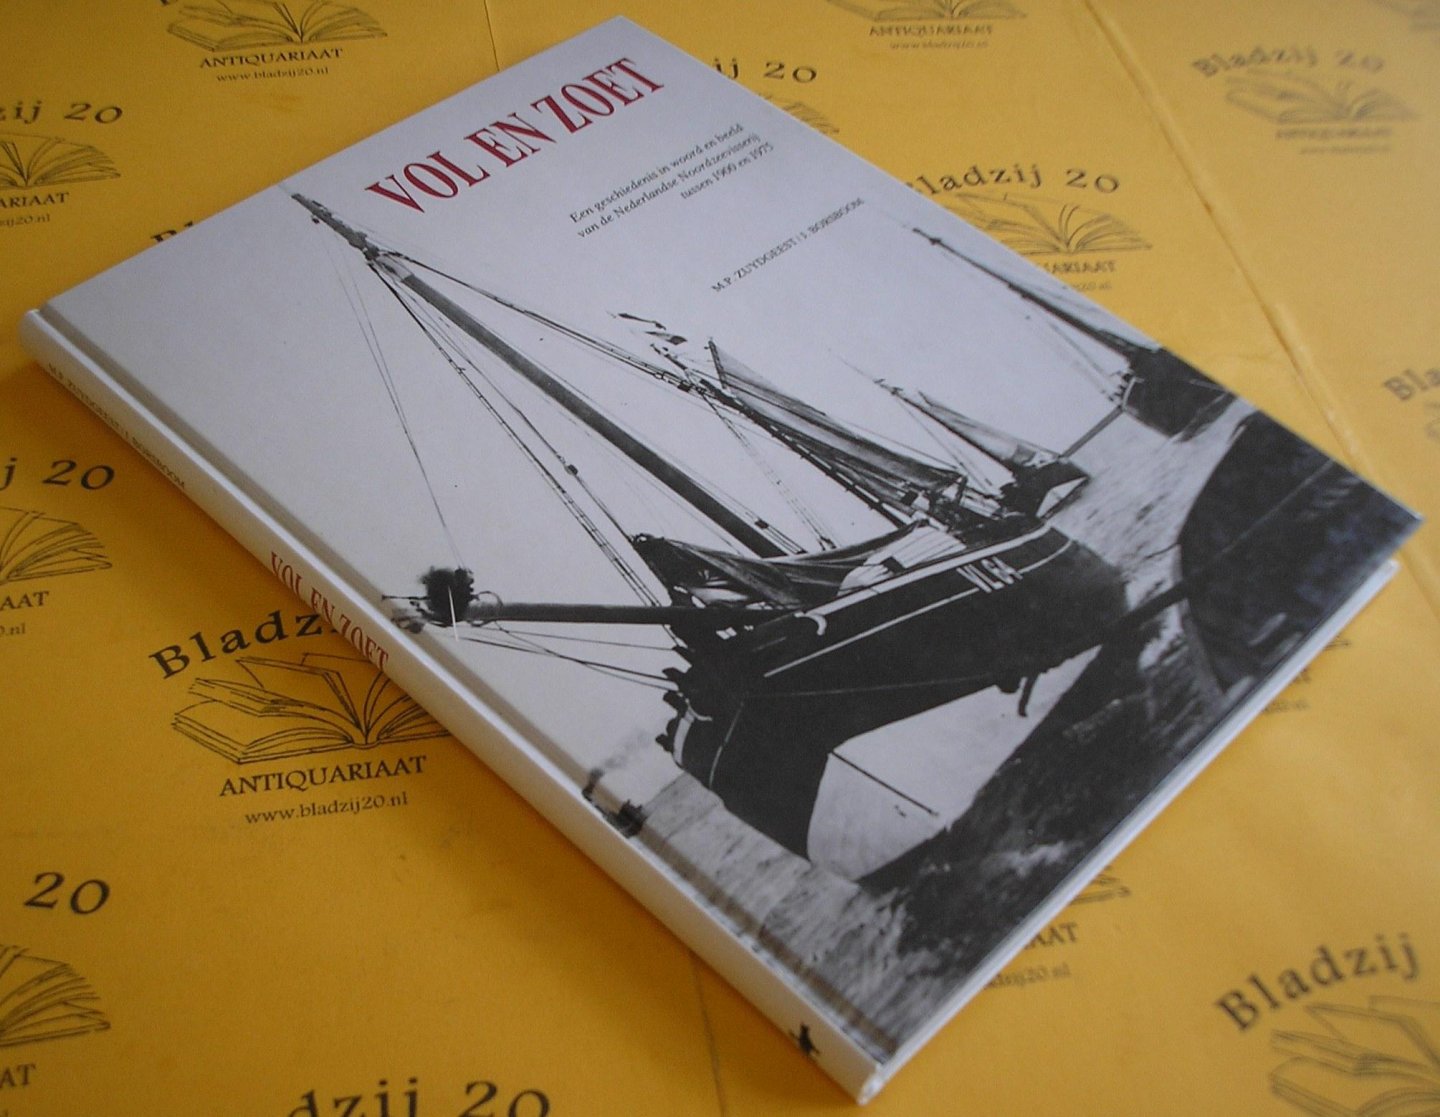 Zuydgeest, M.P. en Borsboom, J. - Vol en zoet. Een geschiedenis in woord en beeld van de Nederlandse Noordzeevisserij tussen 1900 en 1975.